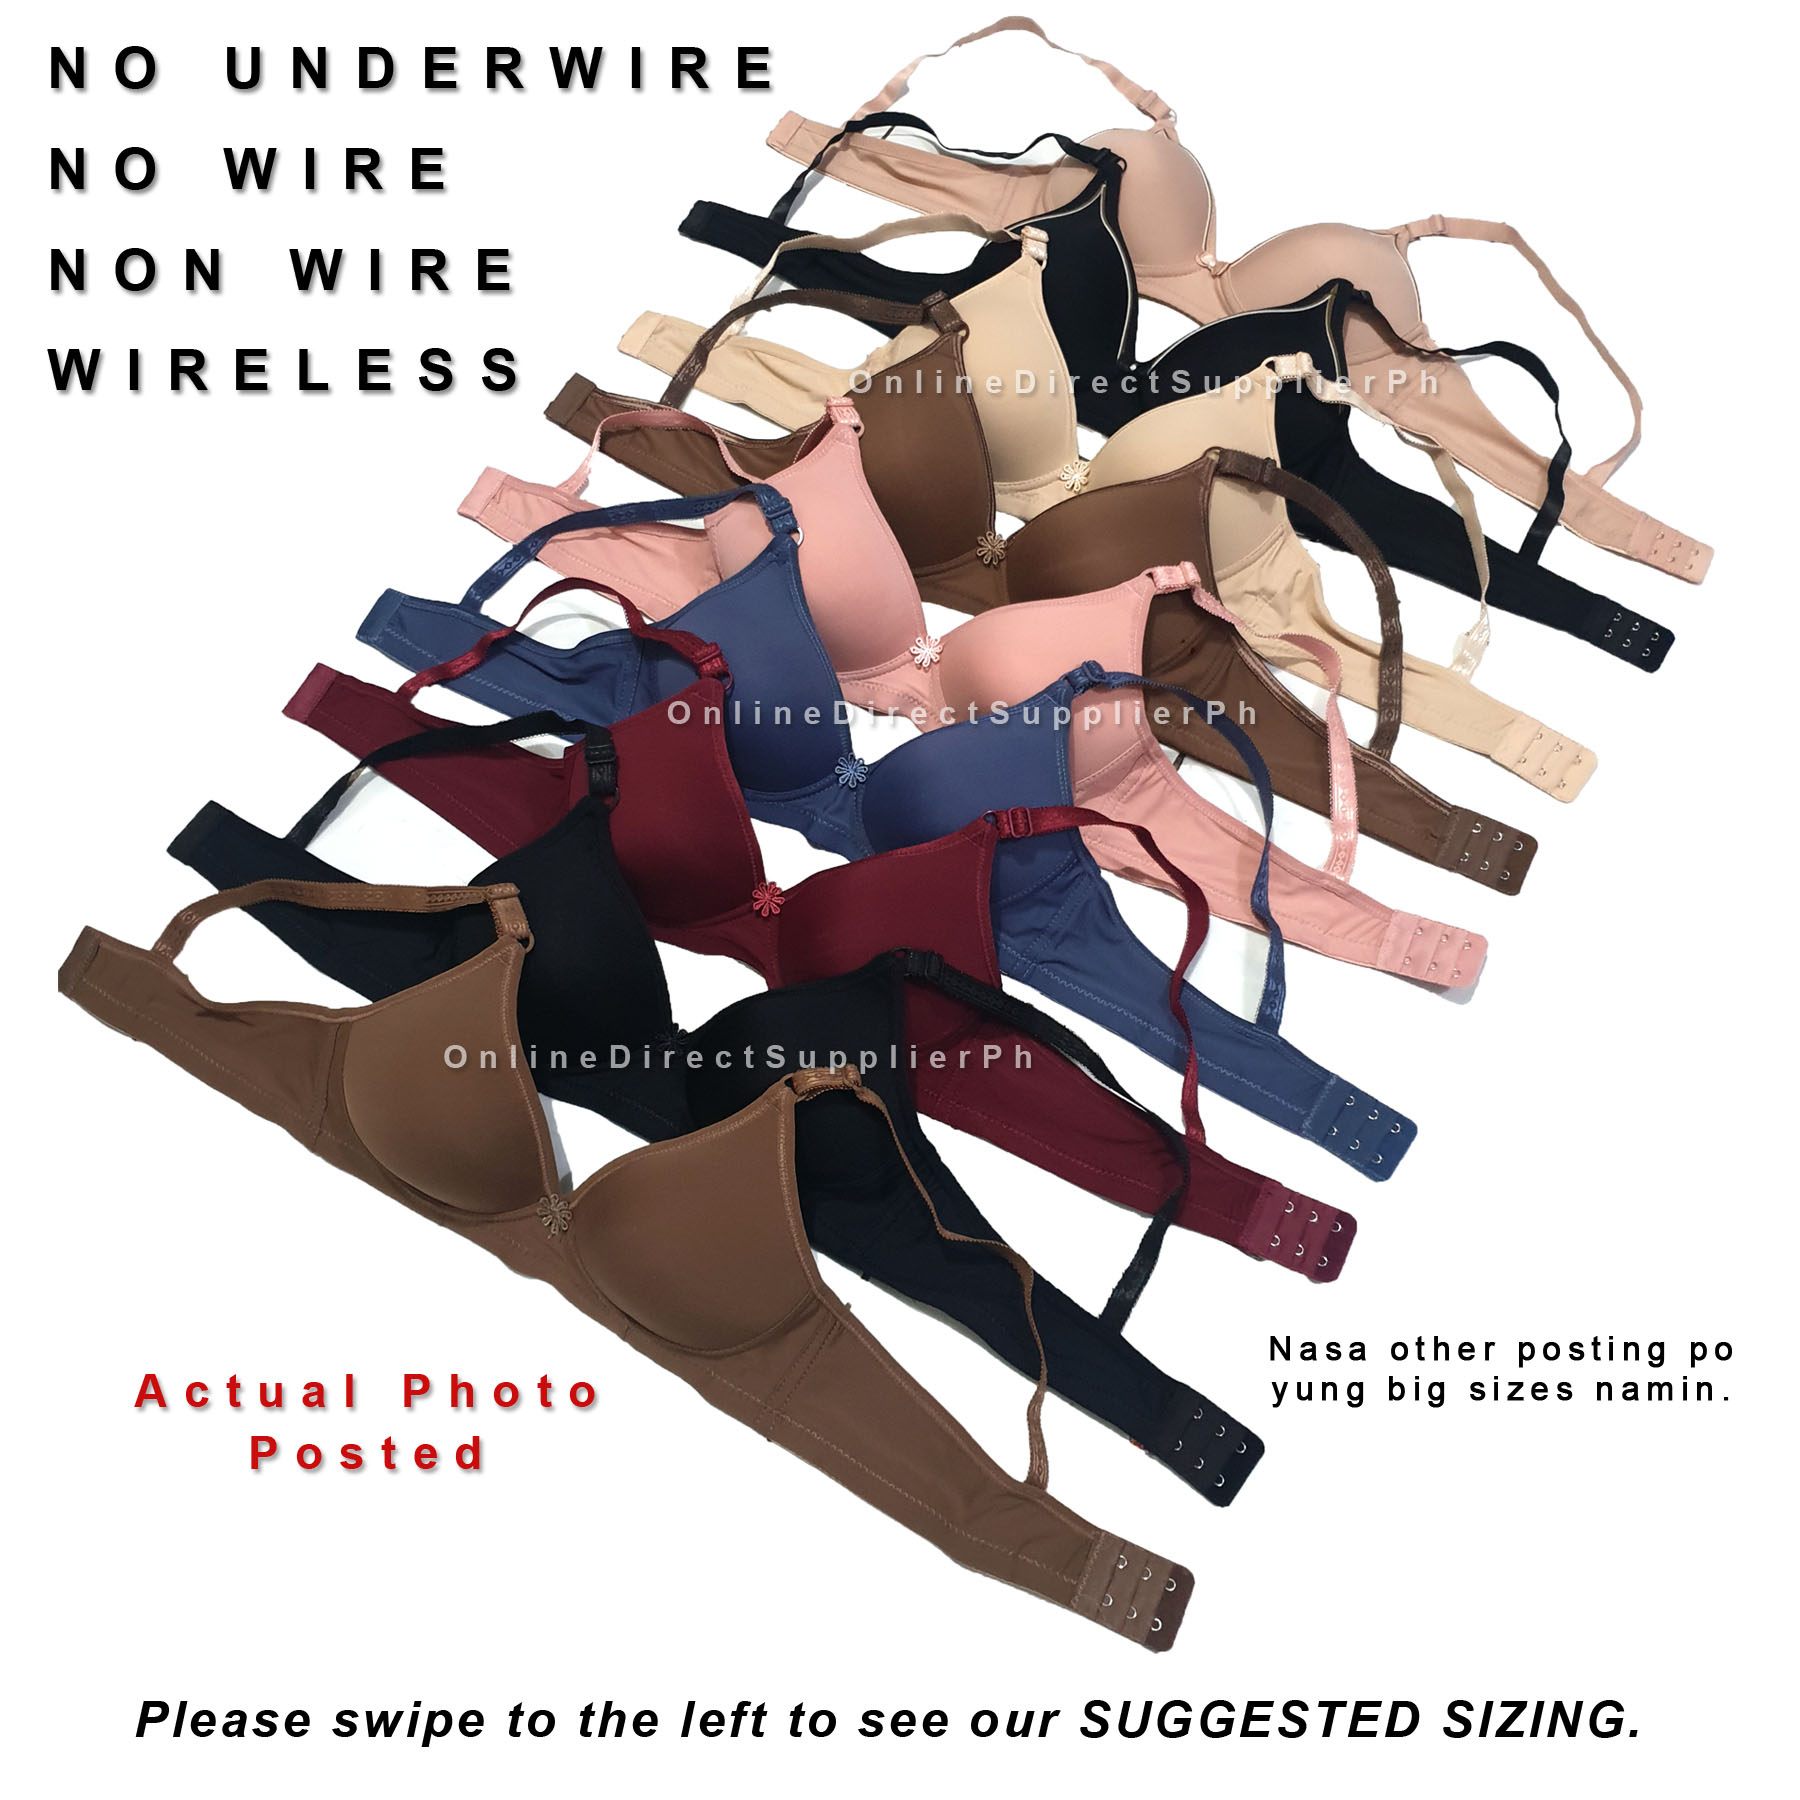 wireless underwire bra